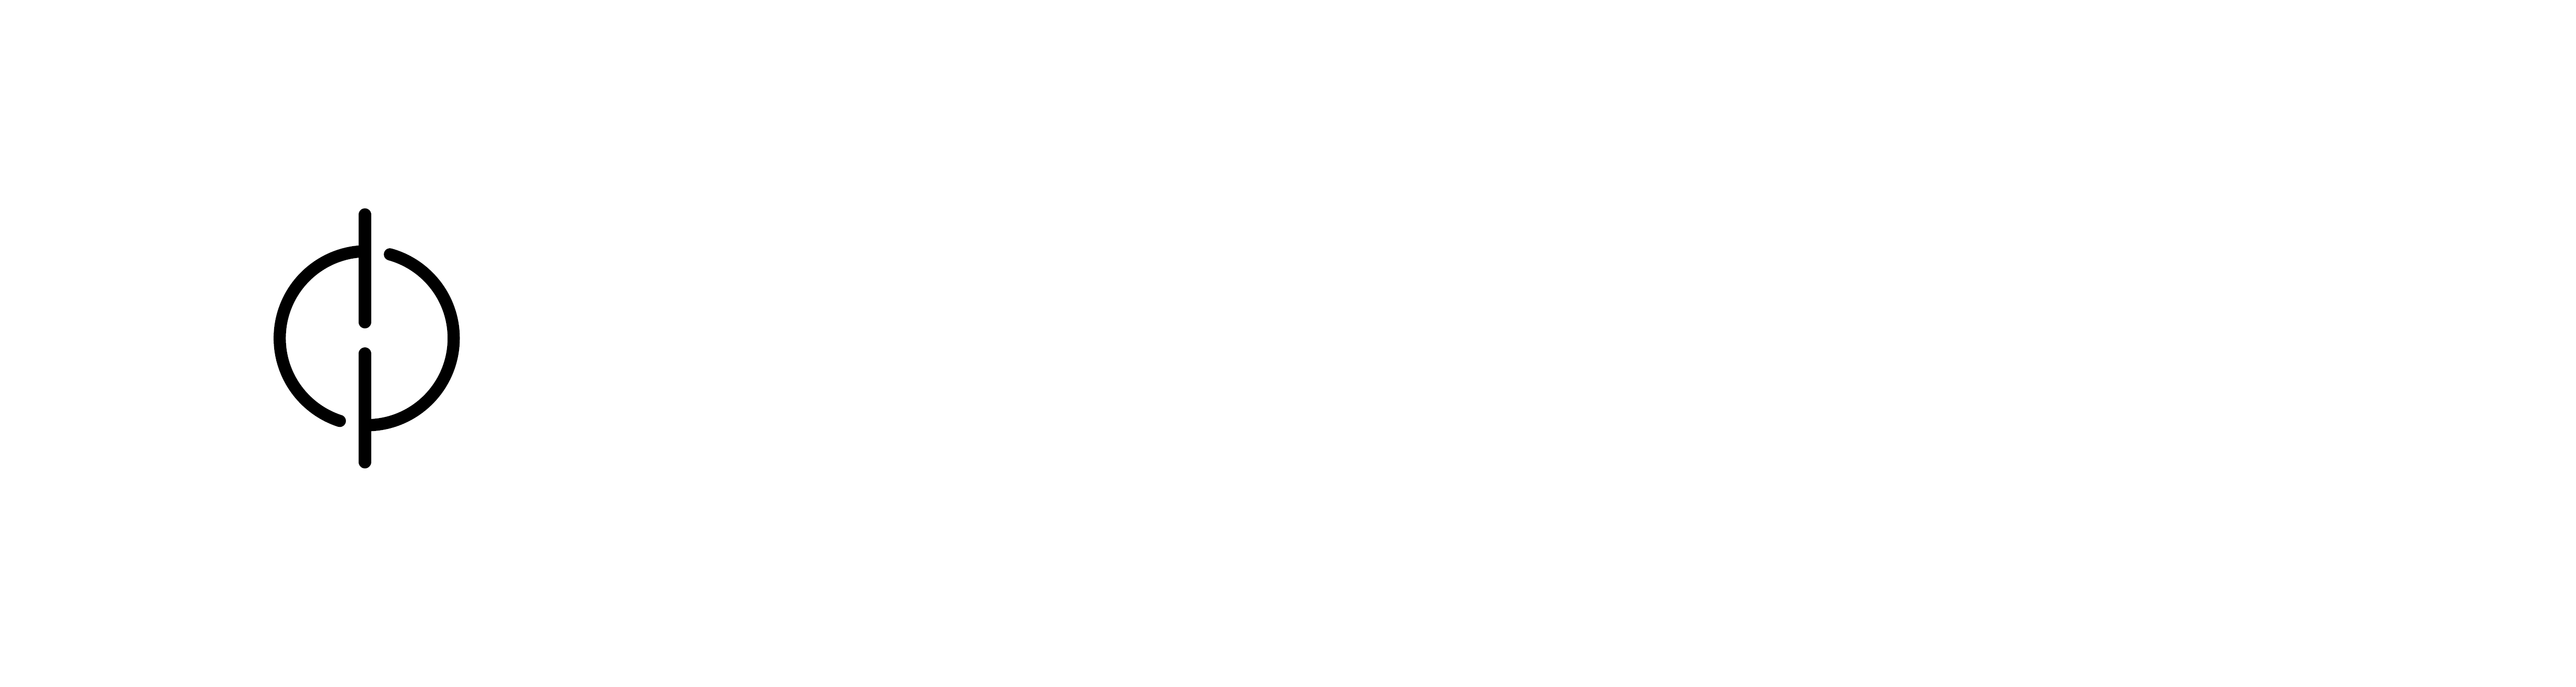 DataPrep Logo 4